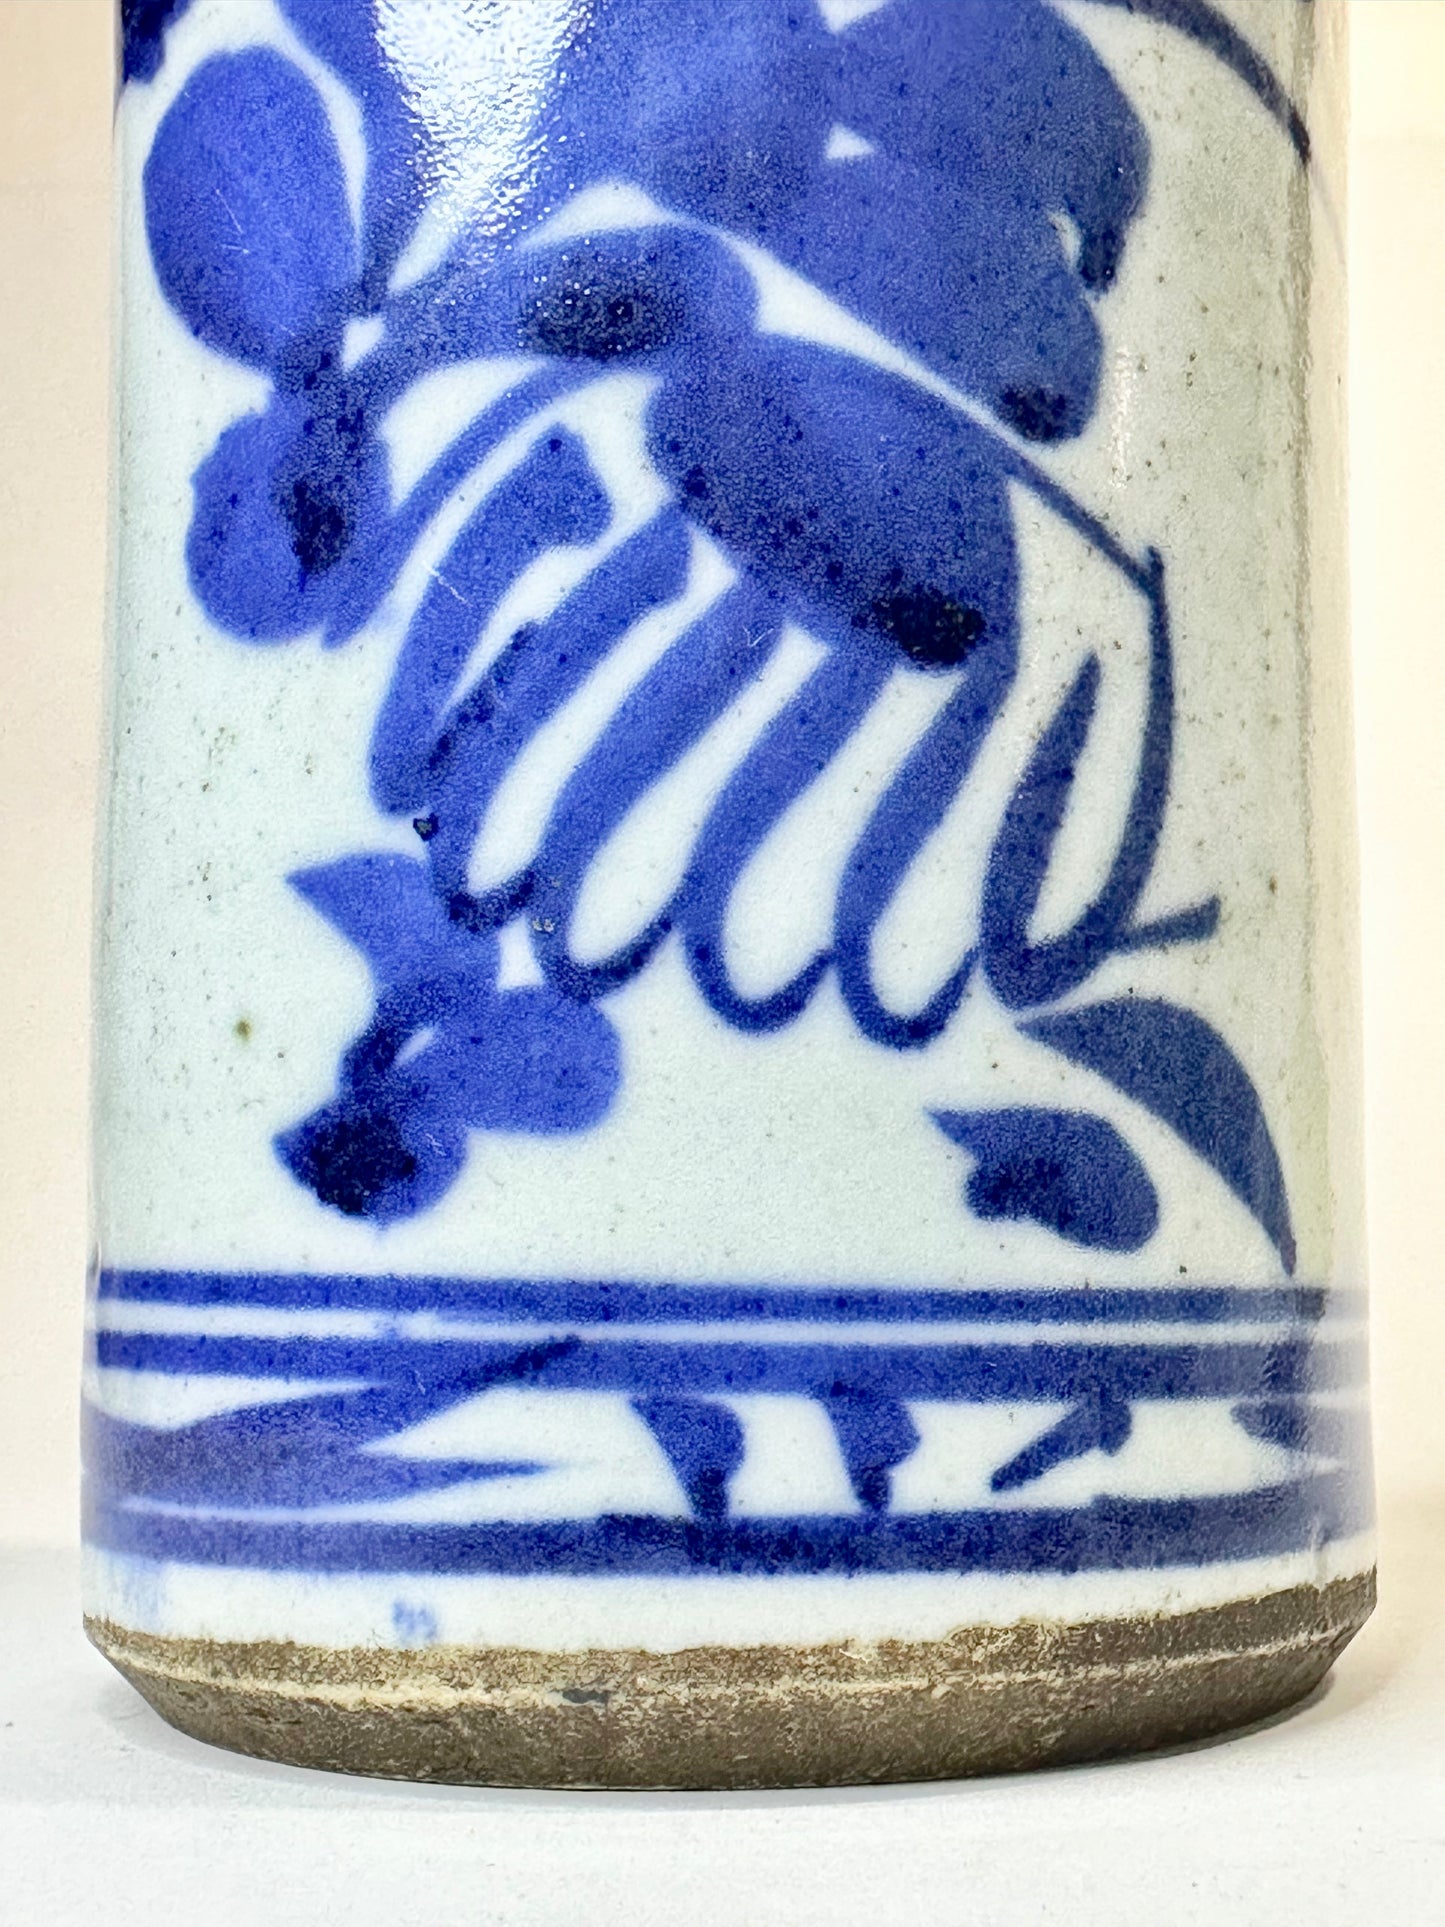 Antique Japanese Late Edo Era Ceramic Tokkuri Sake Bottle 9”